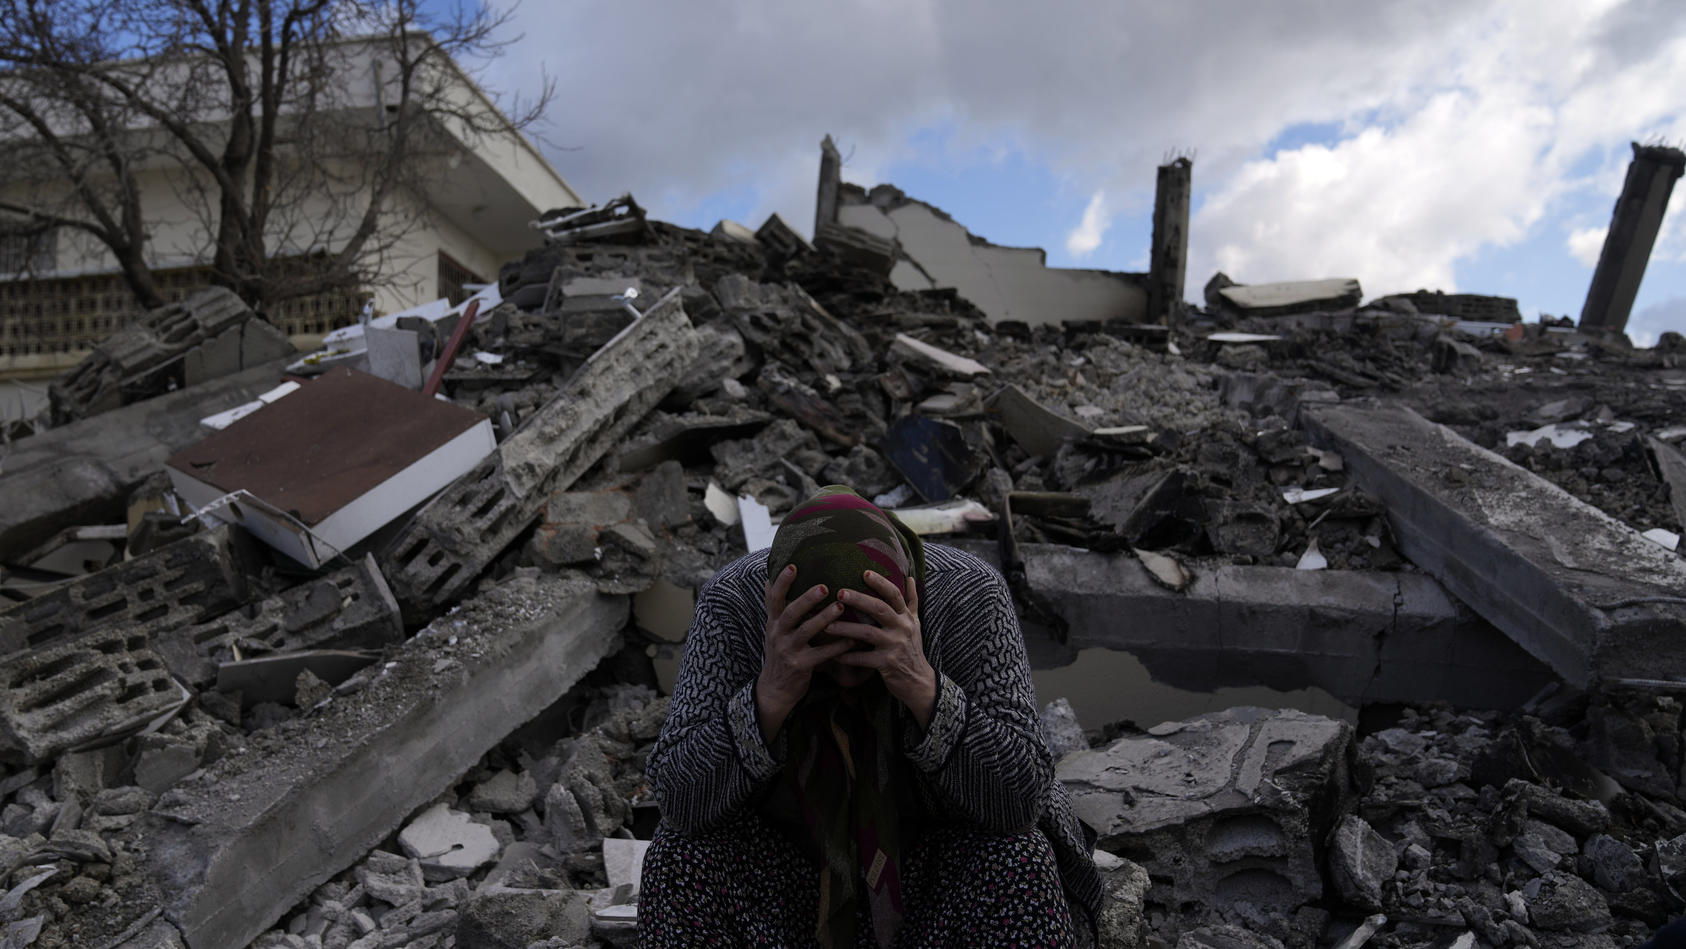 07.02.2023, Türkei, Osmaniye: Eine Frau sitzt auf Trümmern, nach dem verheerenden Erdbeben. Mehr als 13 Millionen Menschen in der Türkei sind nach Einschätzung der Regierung von der Erdbebenkatastrophe betroffen. Foto: Khalil Hamra/AP/dpa +++ dpa-Bil